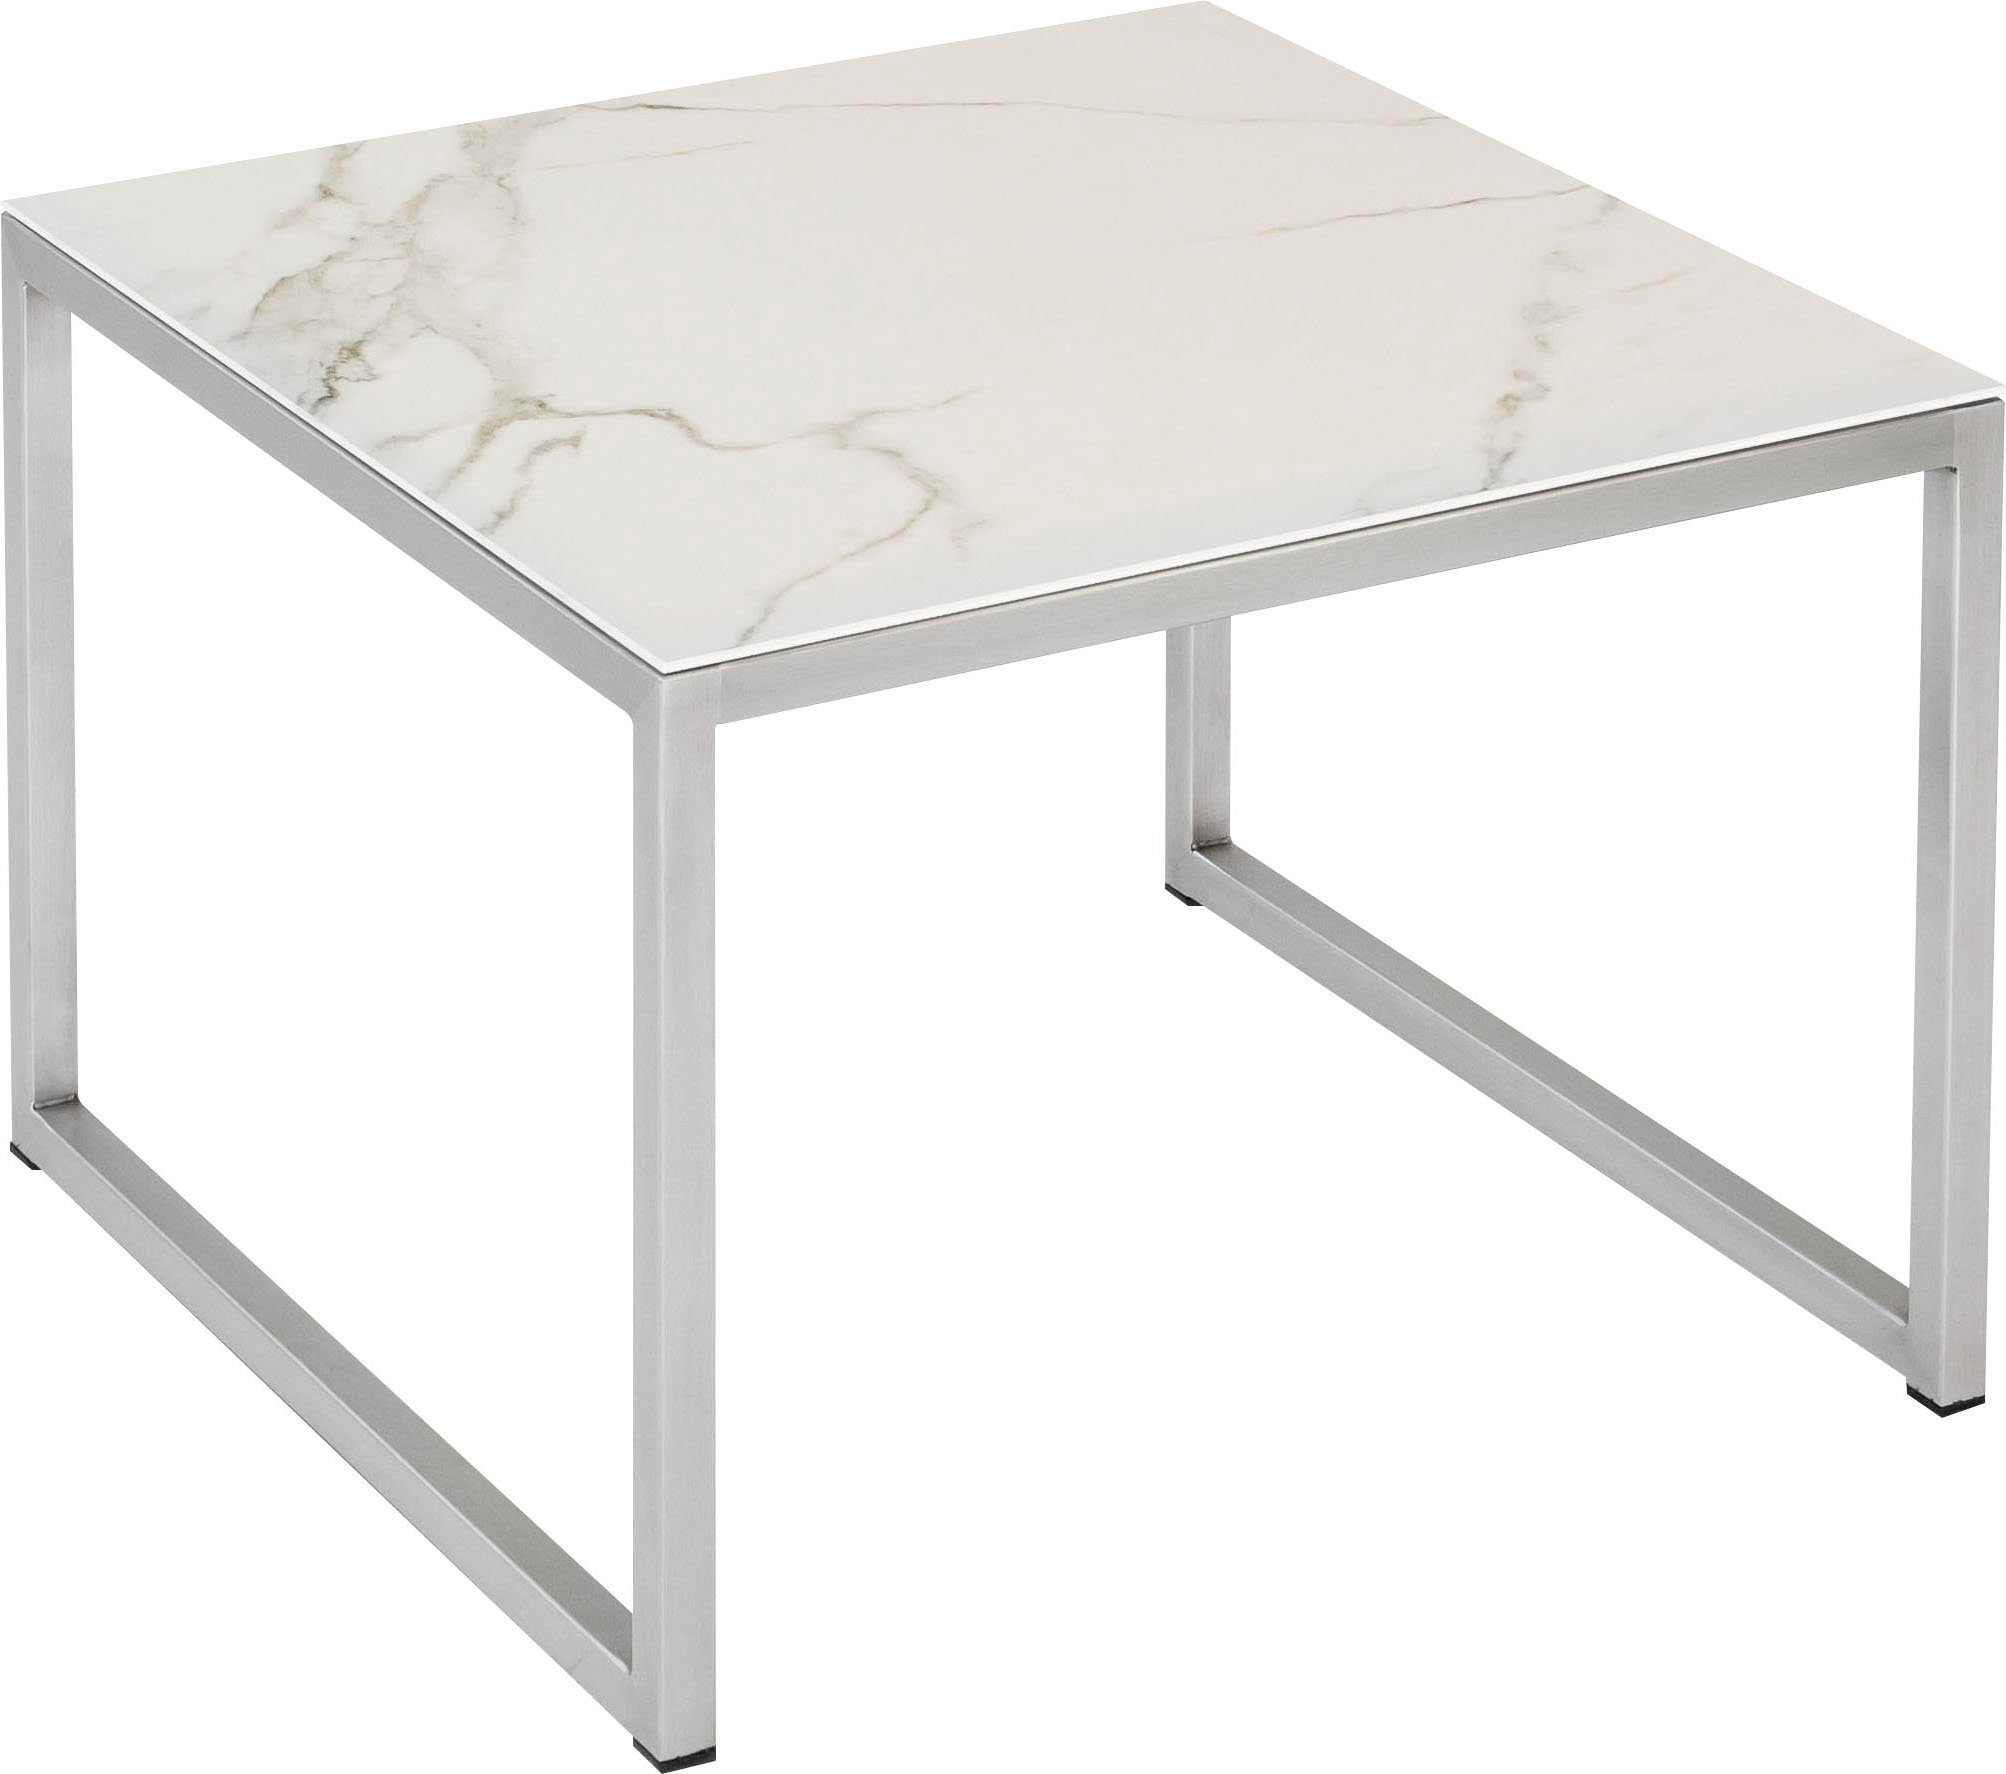 Möbel hochwertiger Tischplatte aus Keramik Henke Beistelltisch,